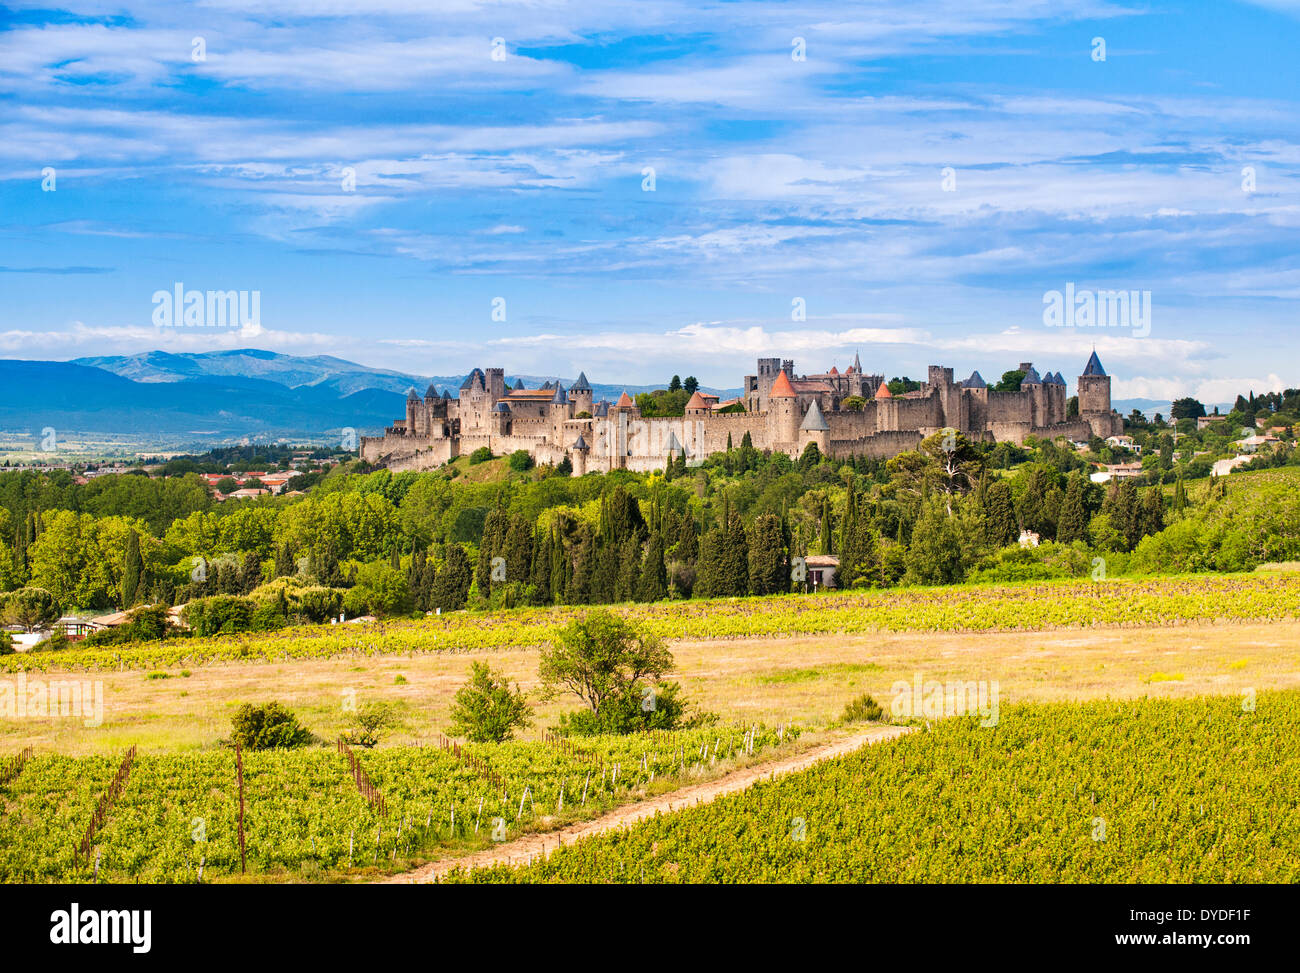 La città fortificata di Carcassonne. Foto Stock